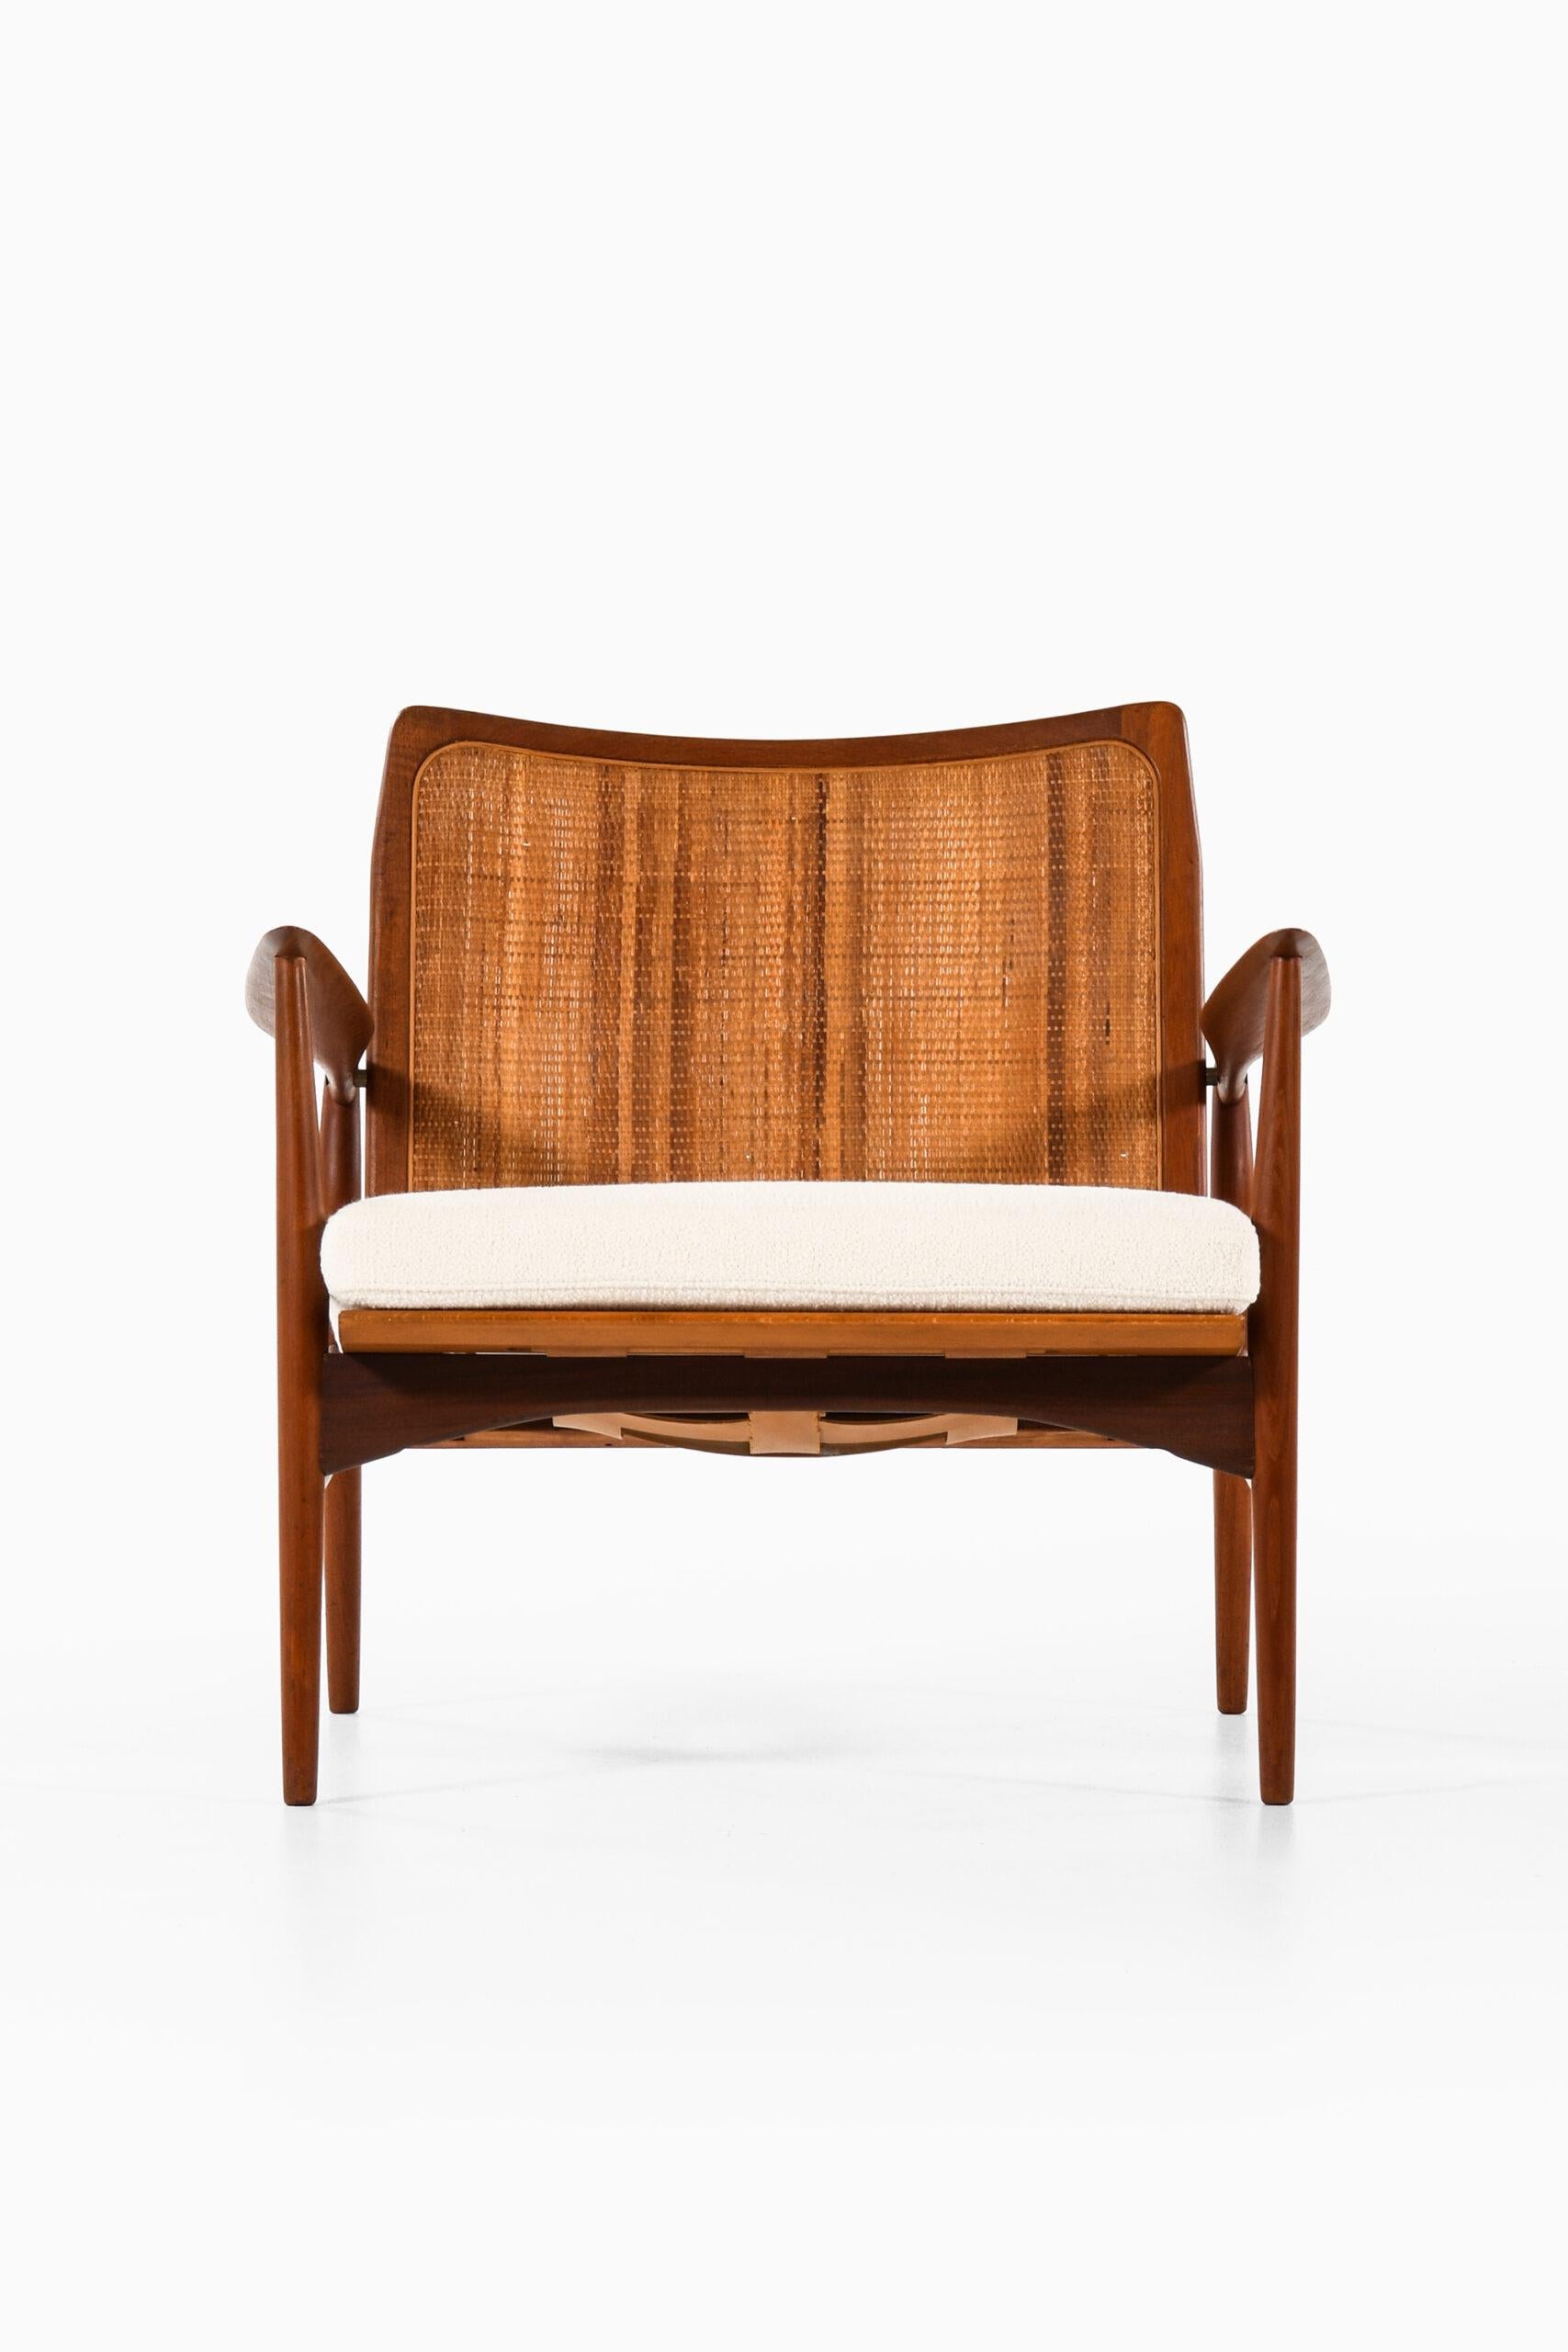 Sehr seltener Sessel, entworfen von Ib Kofod-Larsen. Produziert von Selig in Dänemark.